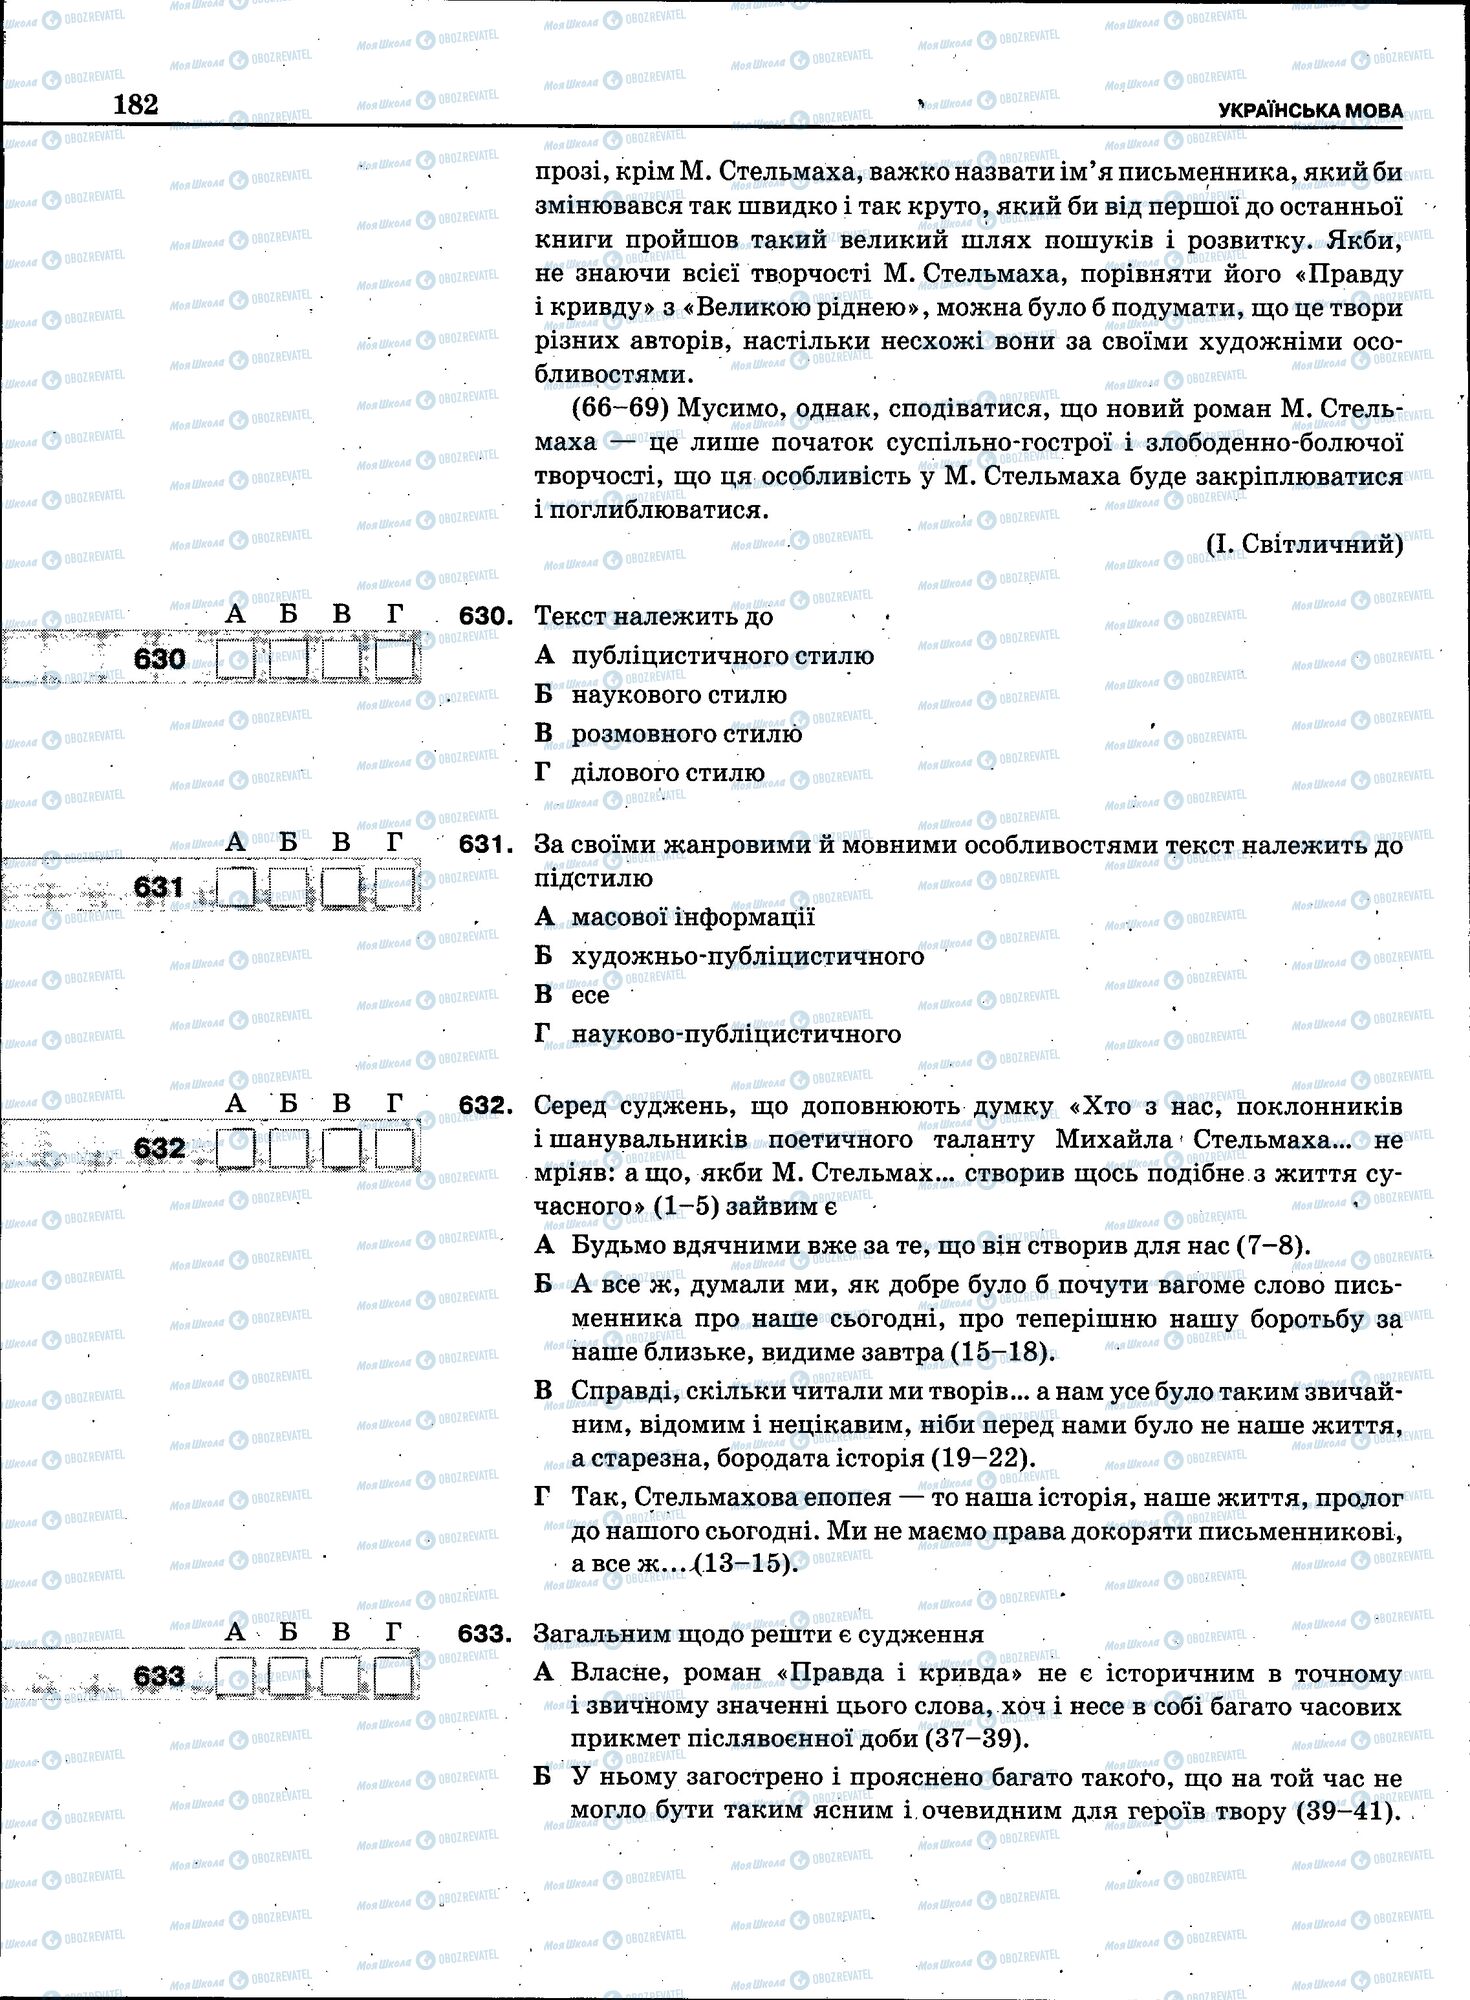 ЗНО Укр мова 11 класс страница 180